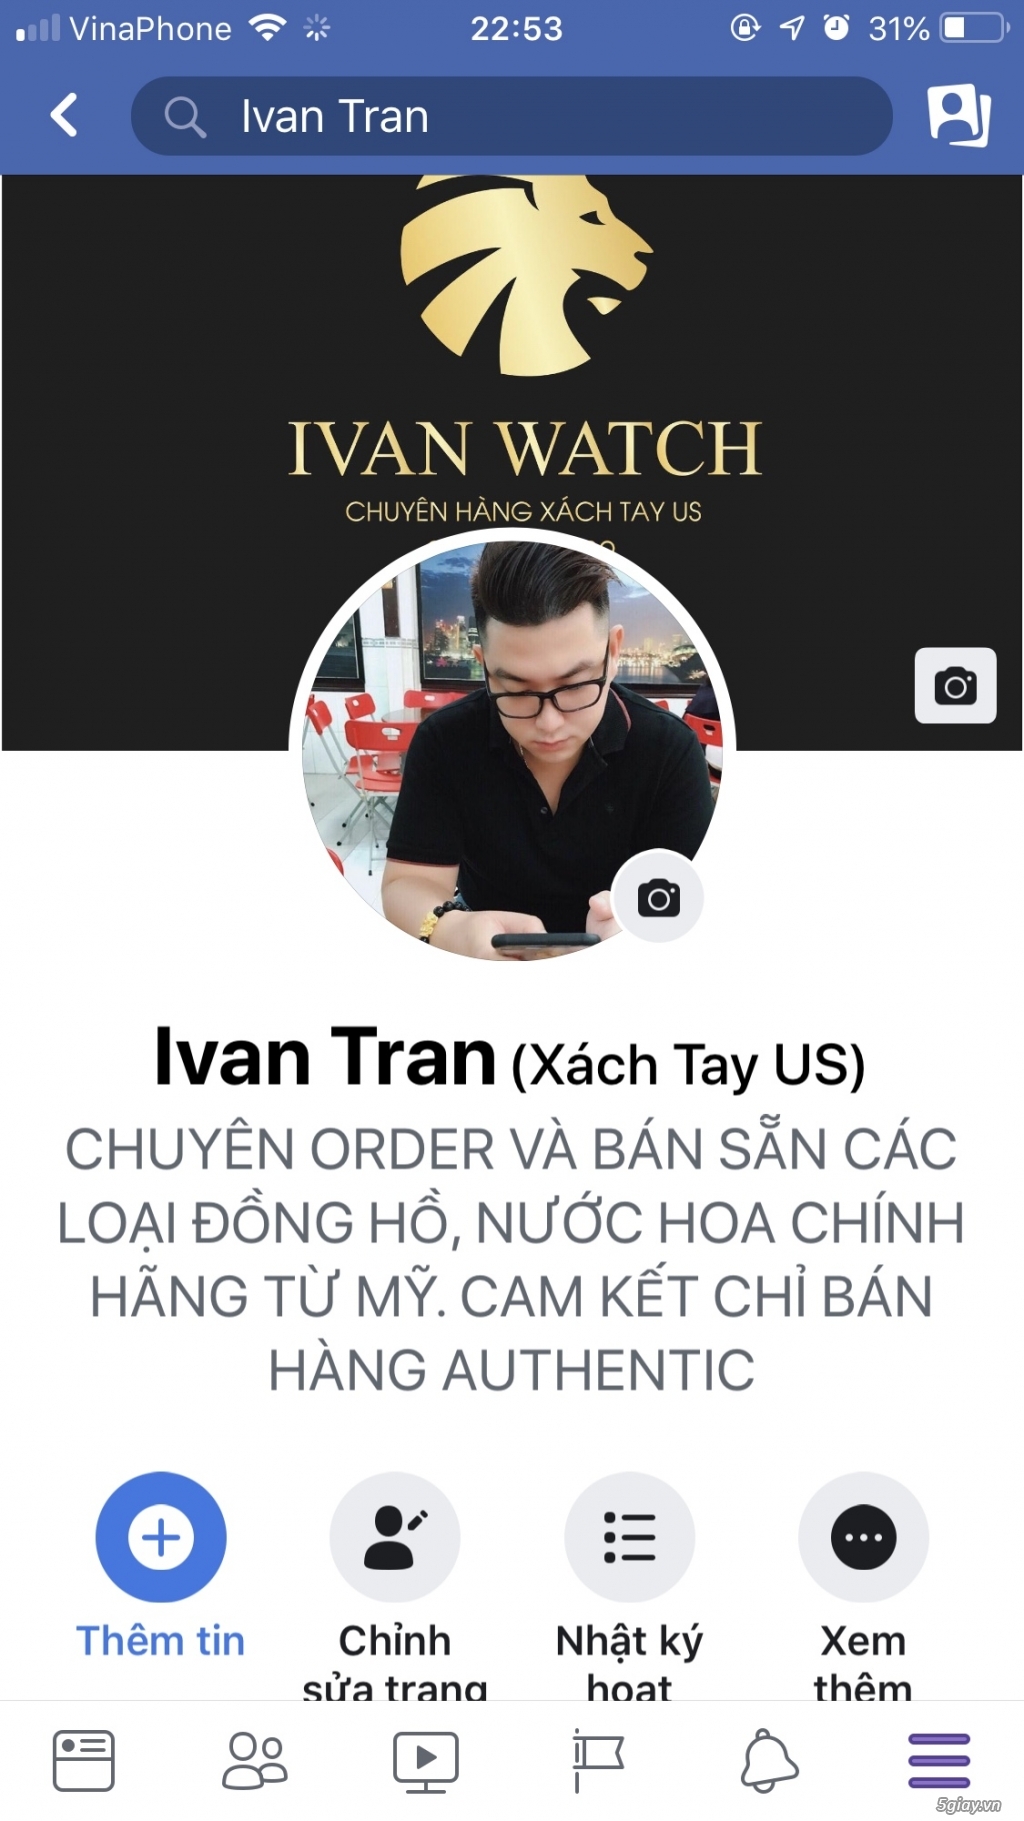 Ivan Watch Chuyên đồng hồ, nước hoa xách tay chuẩn Auth 100%